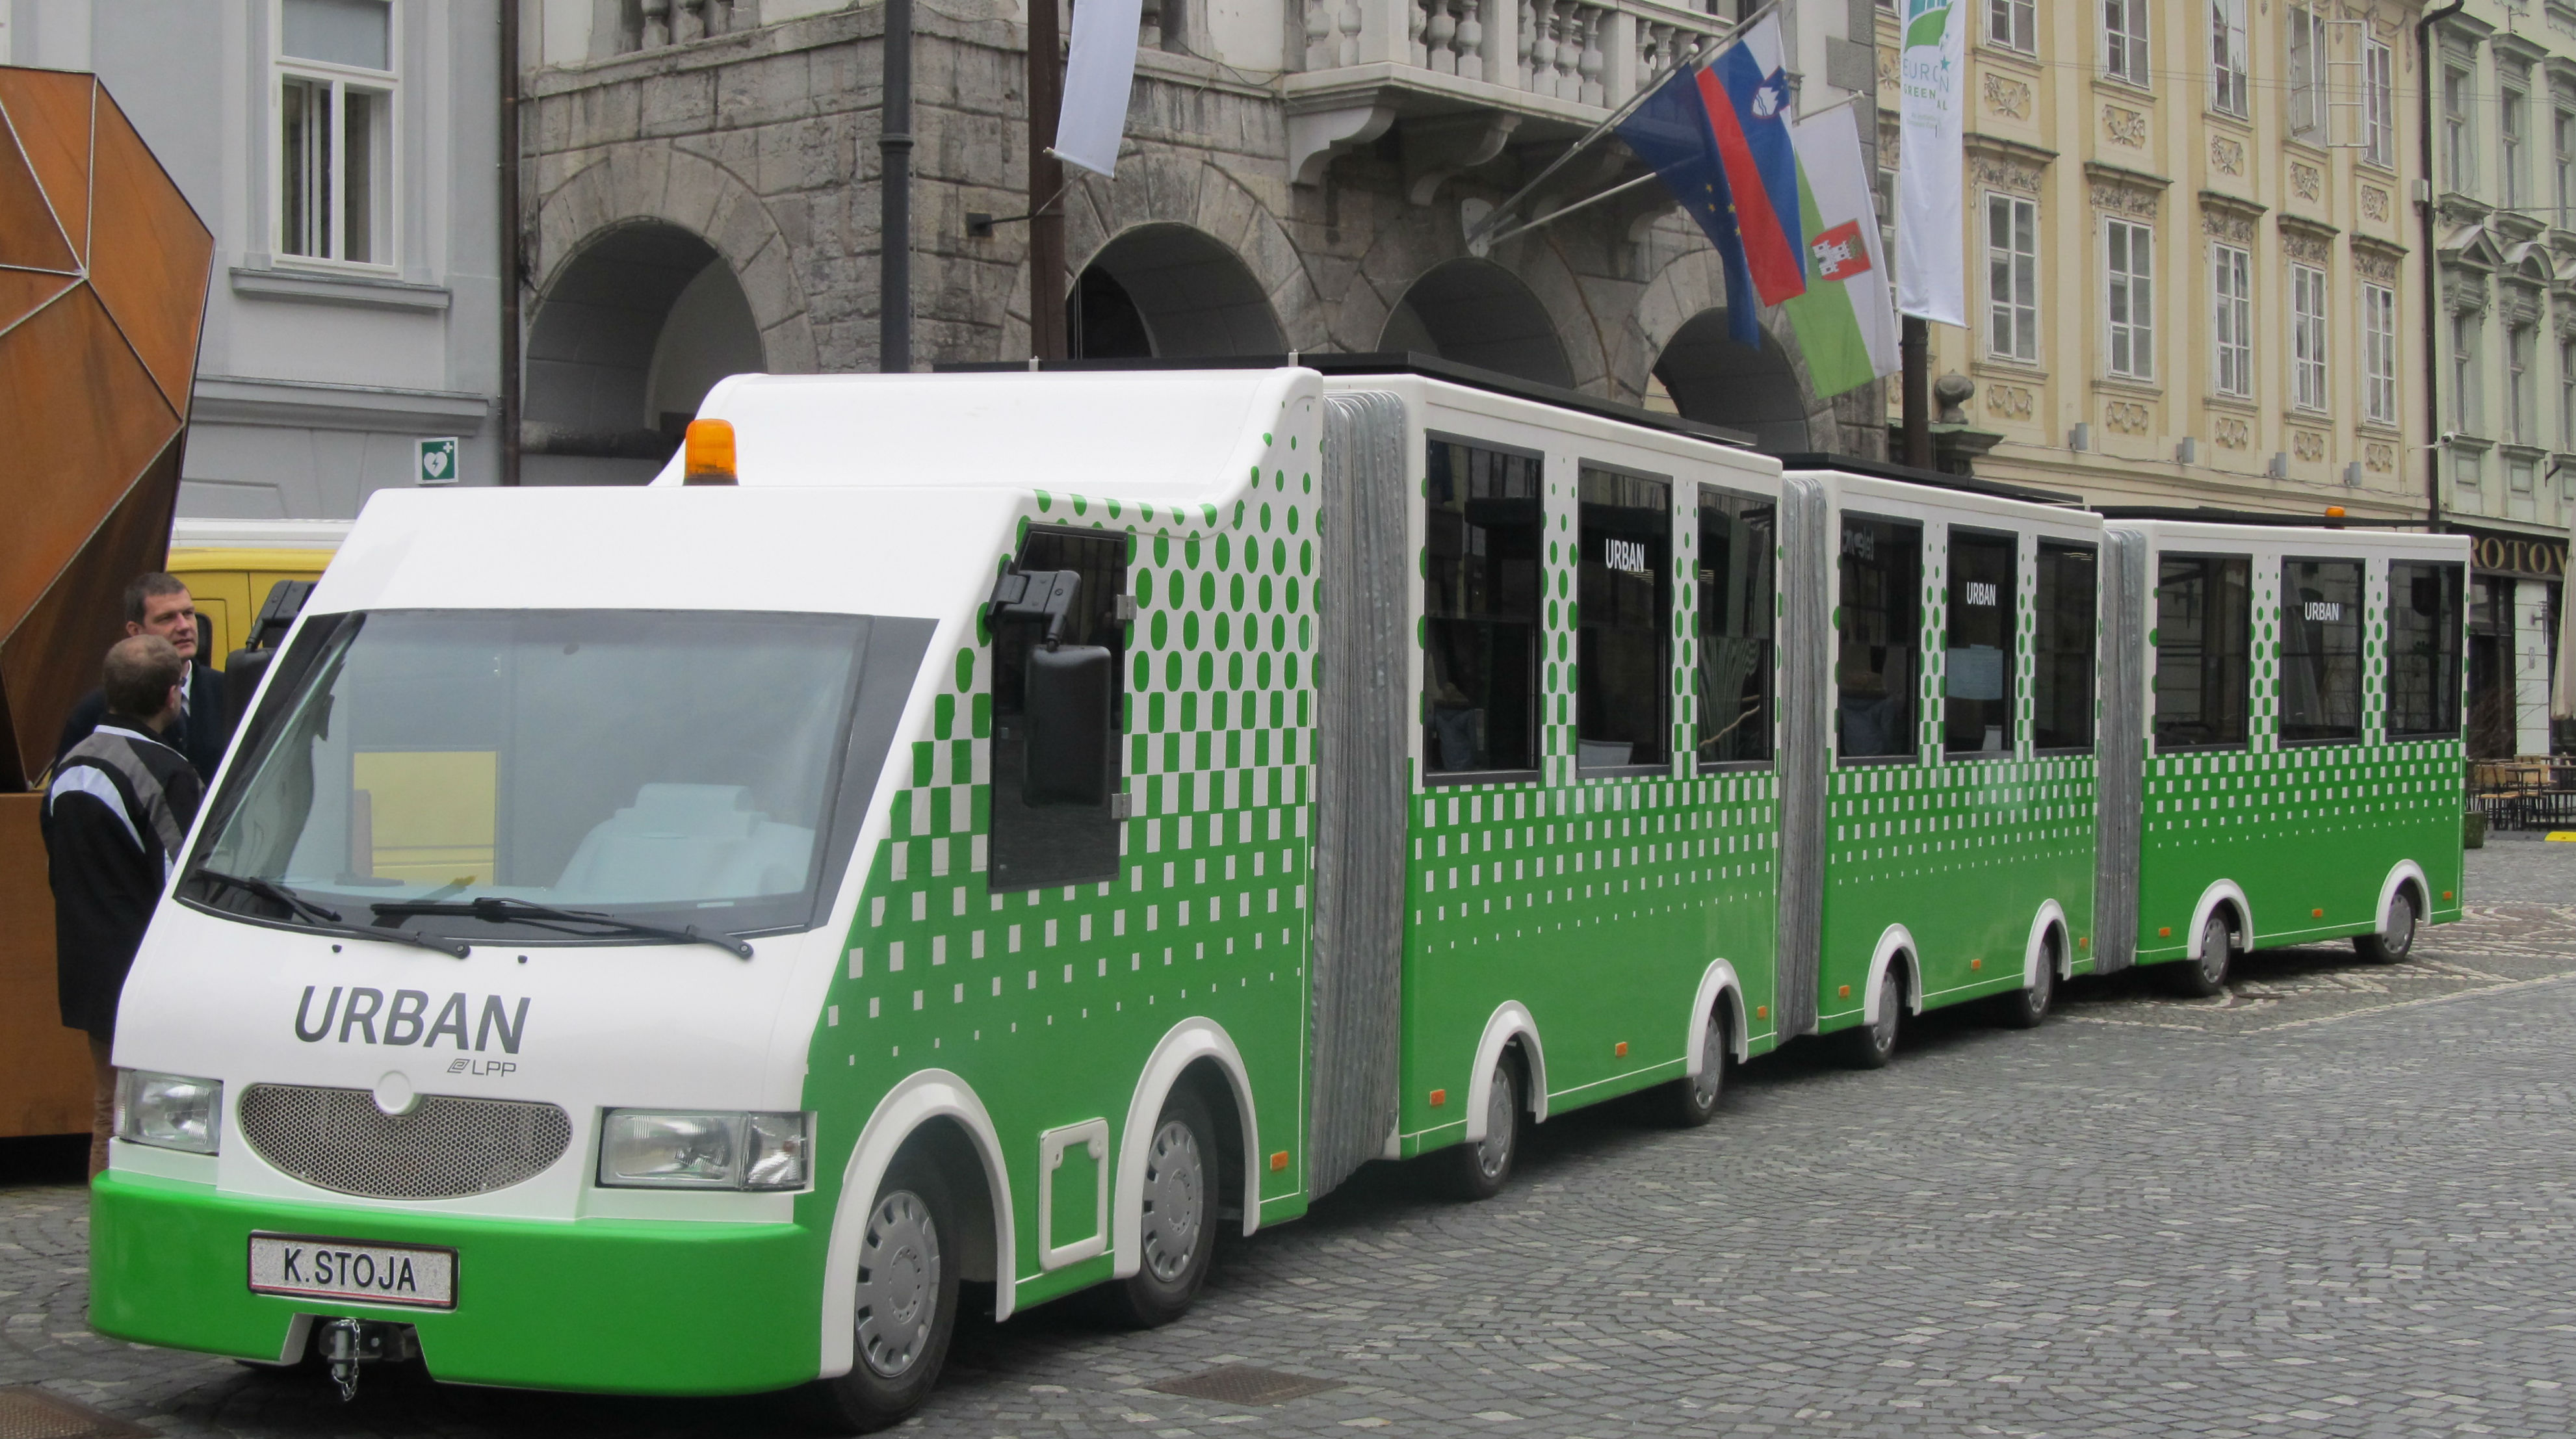 Sodelovanje pri razvoju novega turističnega vlaka v Ljubljani